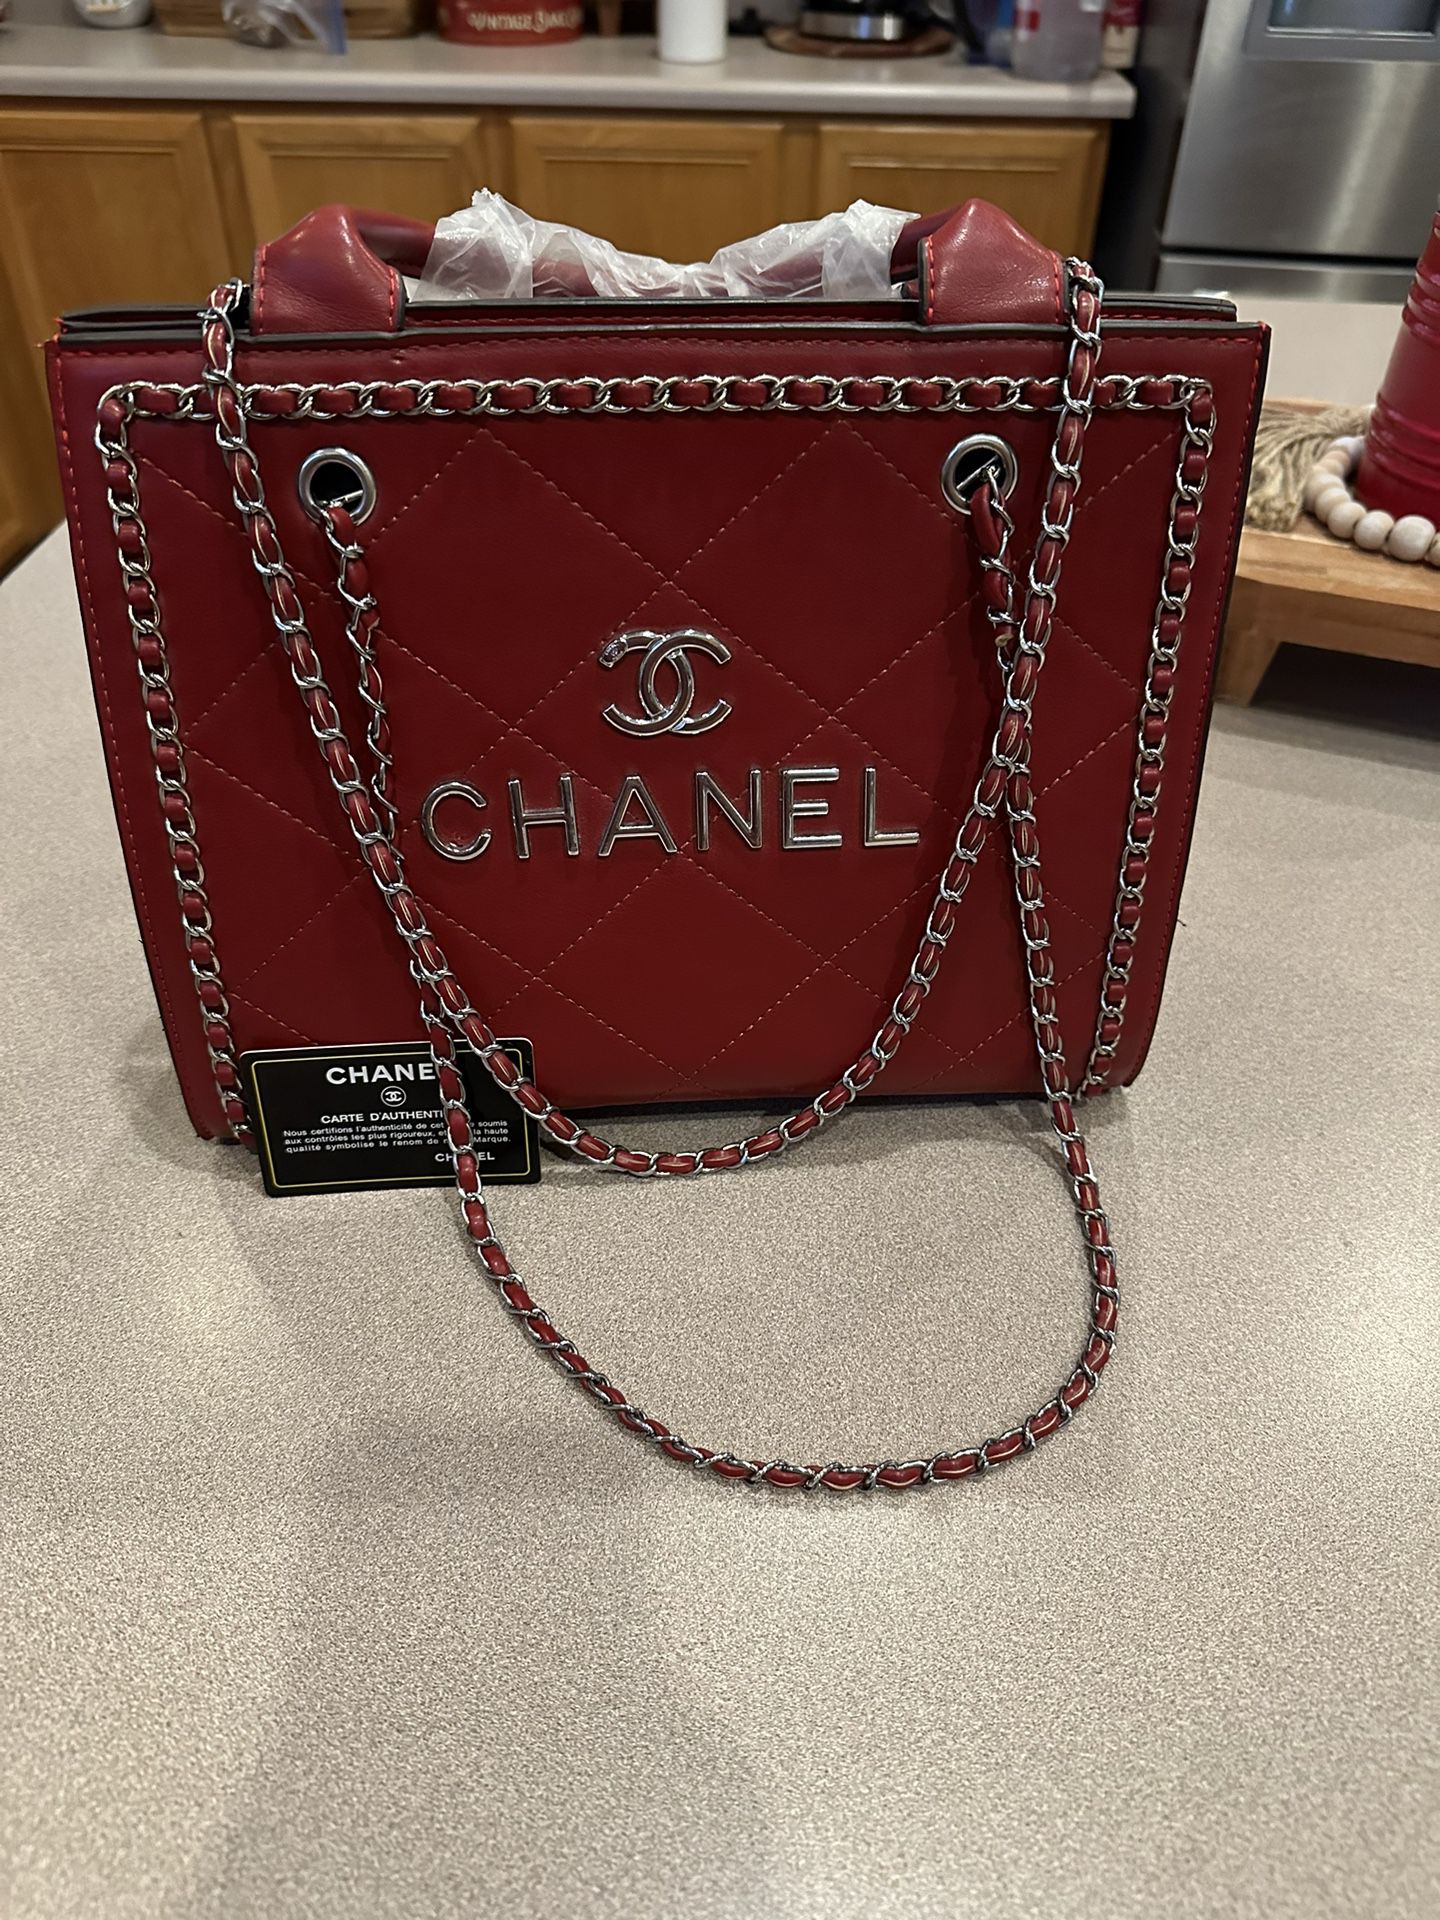 CHANEL bag